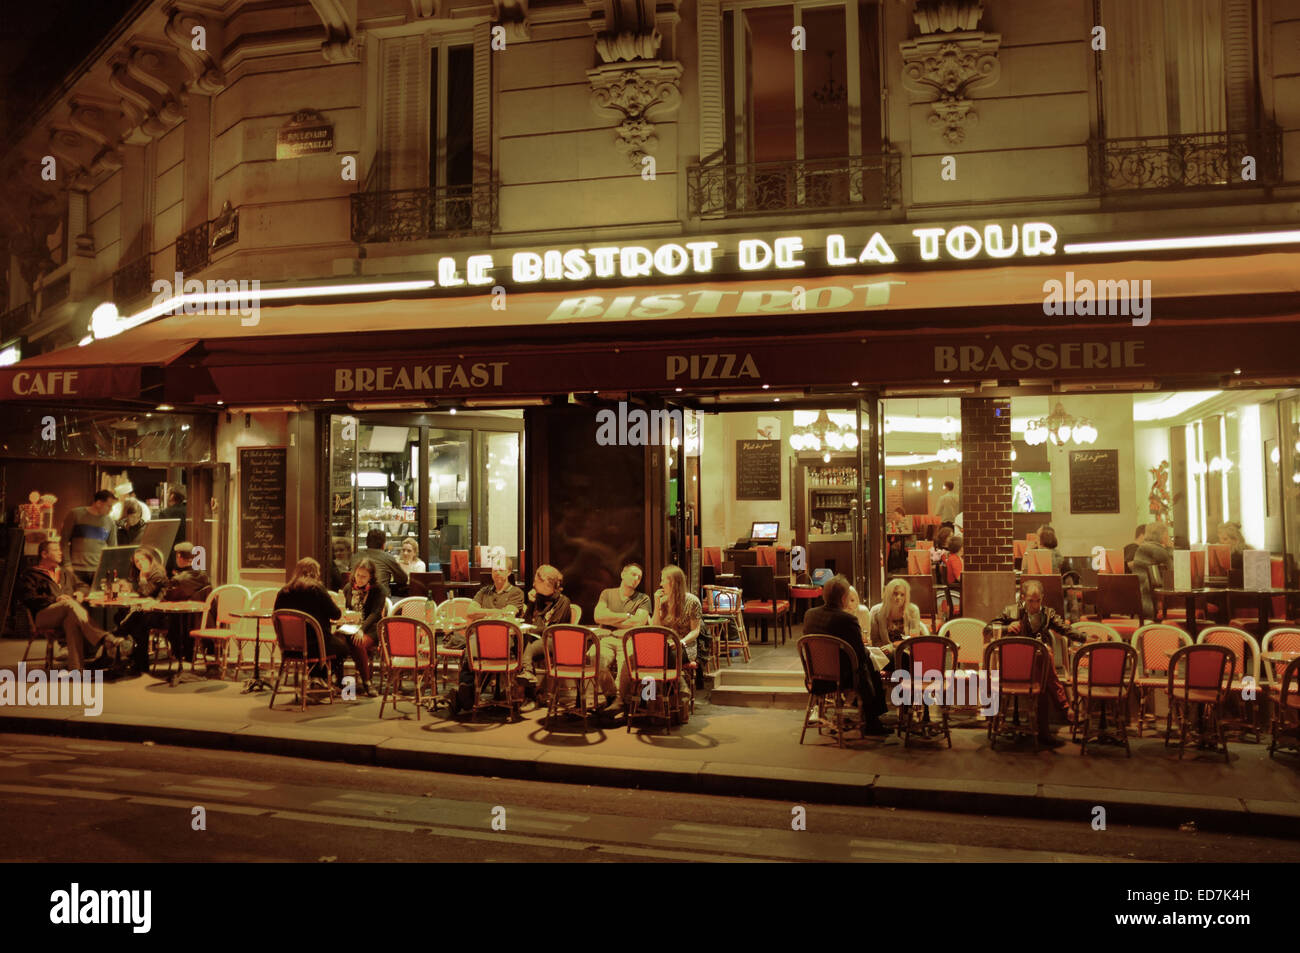 Le Bistrot de la Tour - Paris restaurant close to the Eiffel Tower Stock Photo